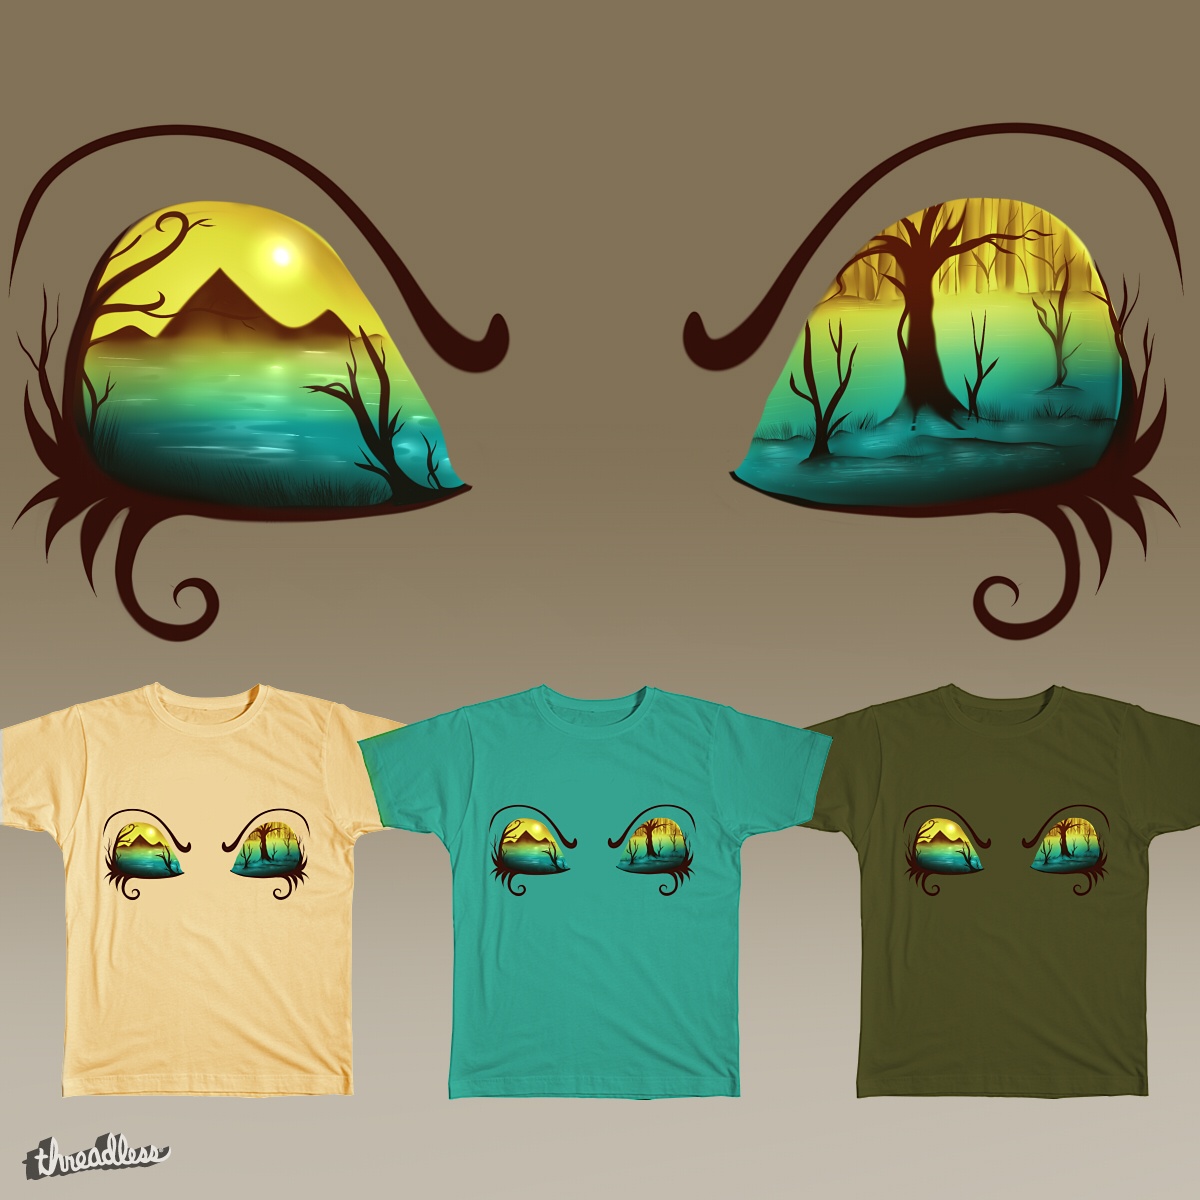 Eyelands, a cool t-shirt design